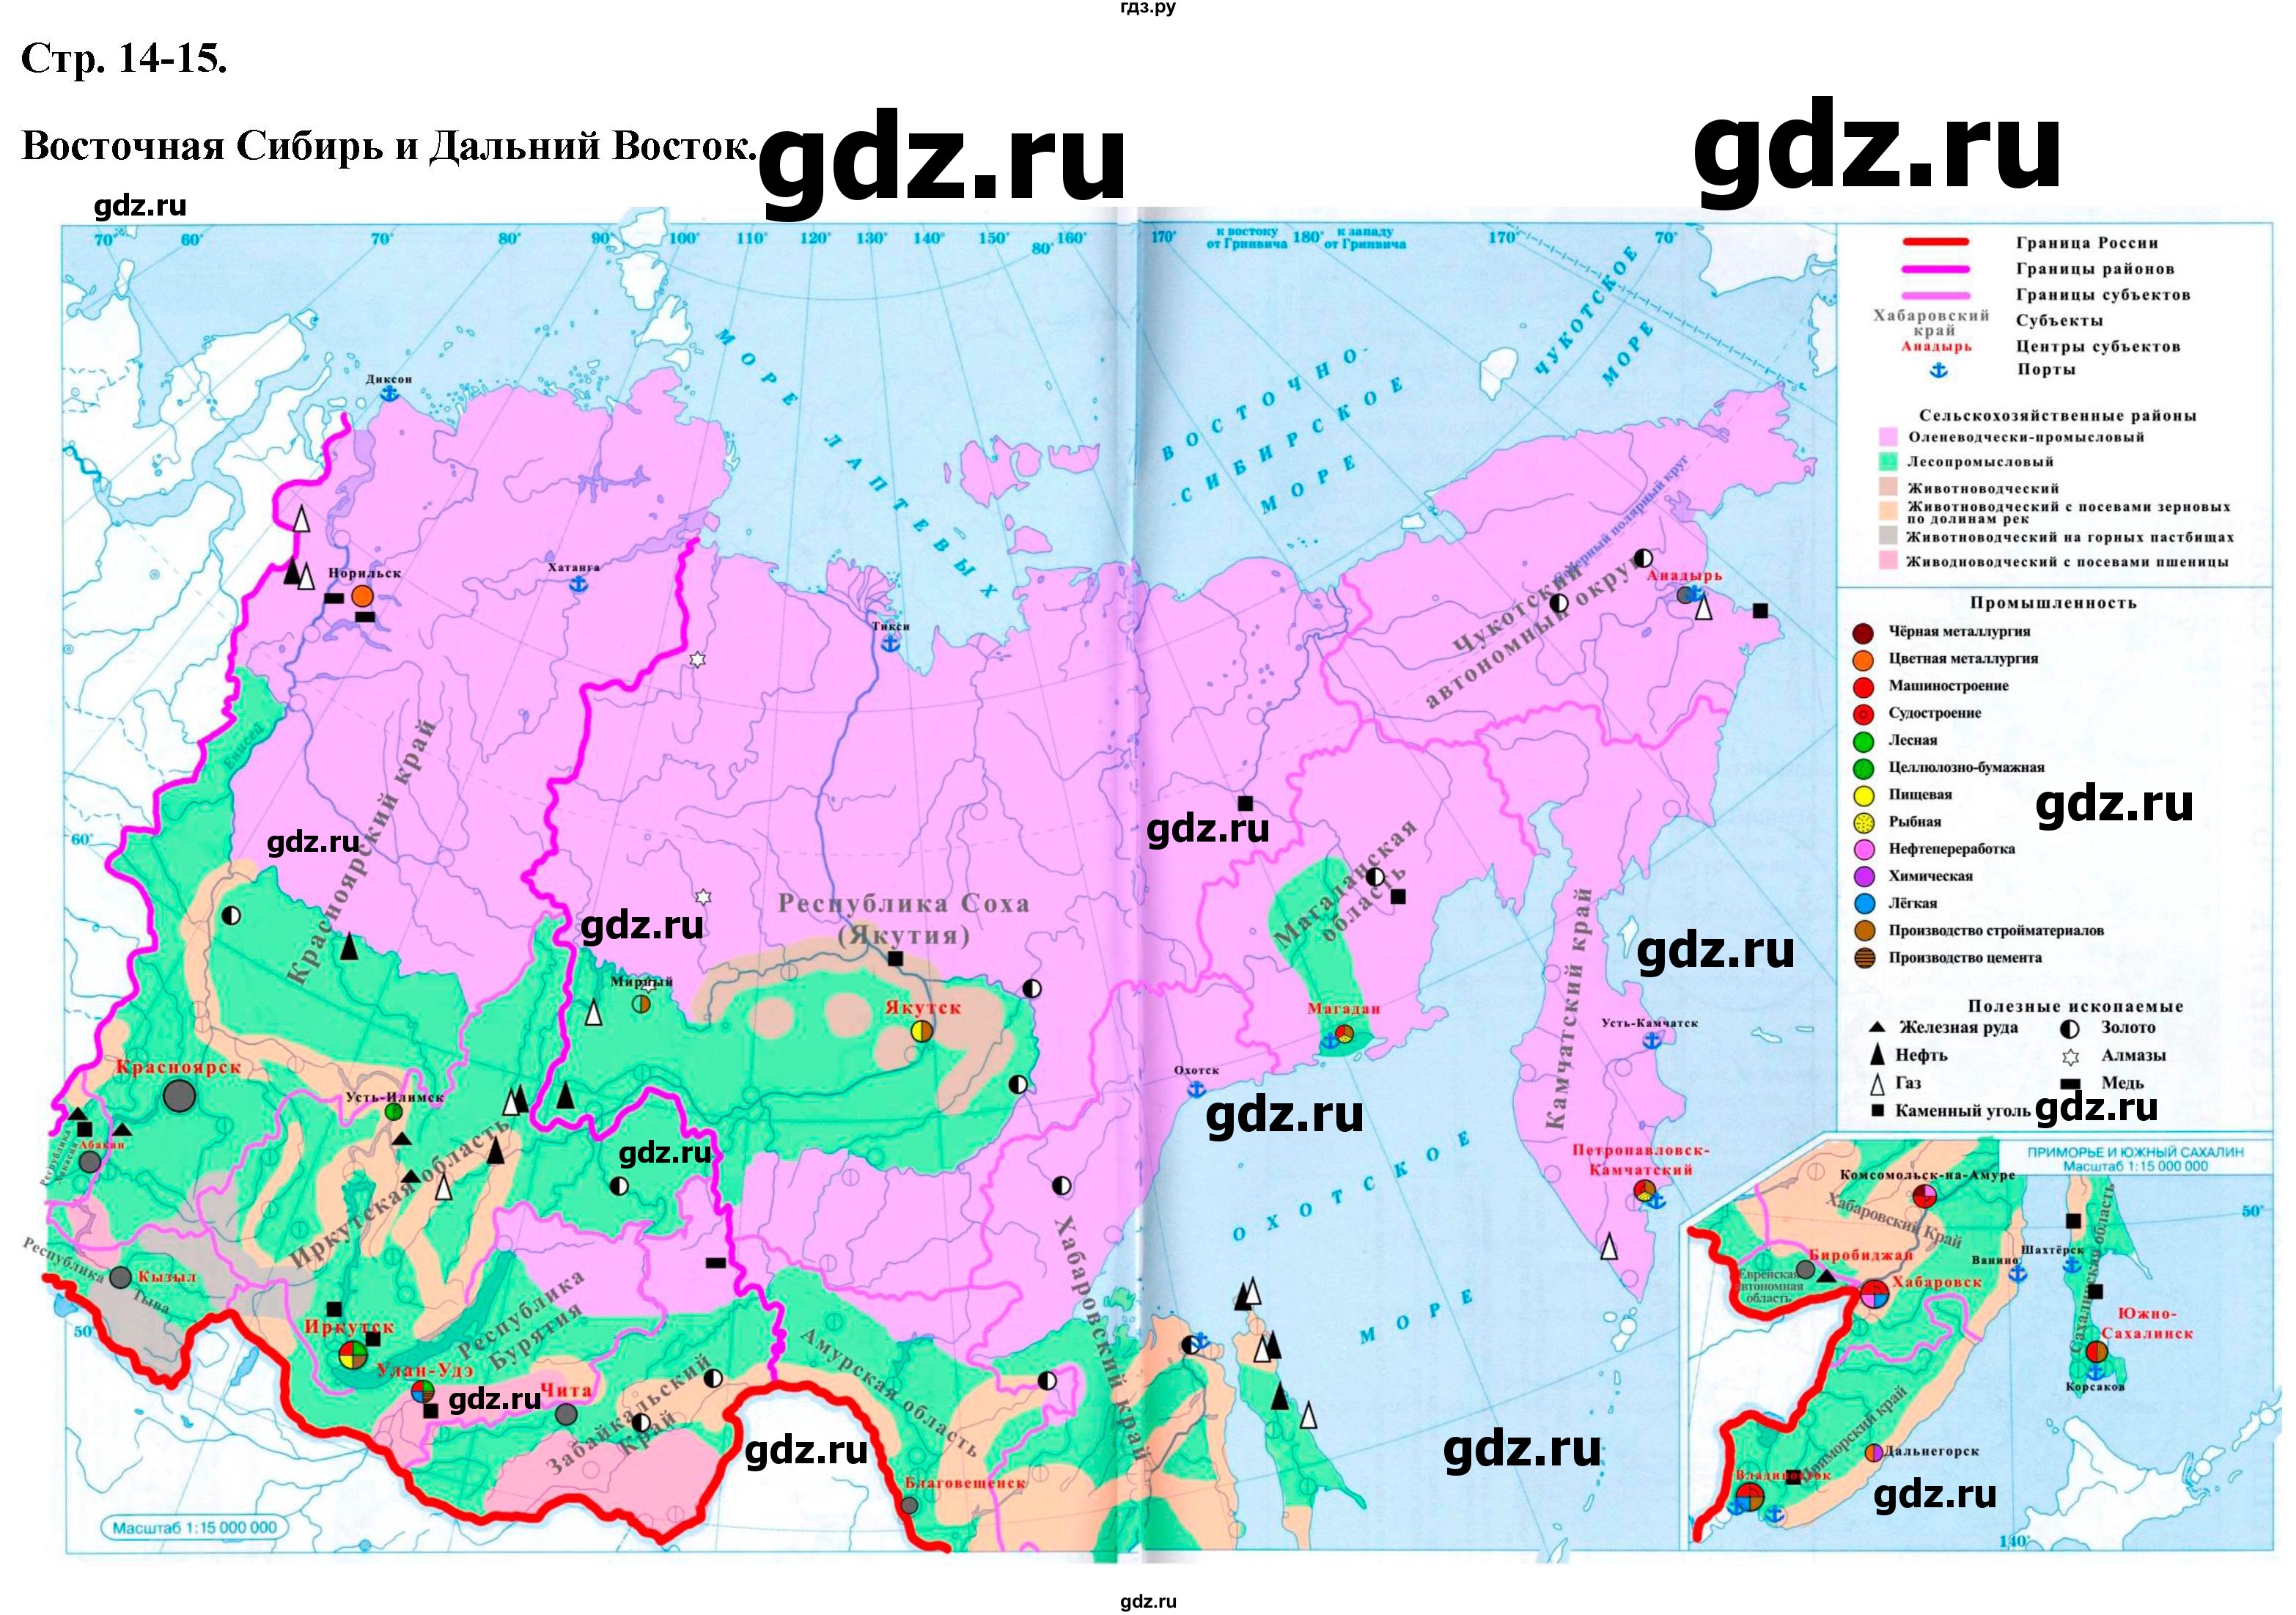 ГДЗ контурные карты стр.14-15 география 9 класс атлас с контурными картамиПриваловский, Курбский